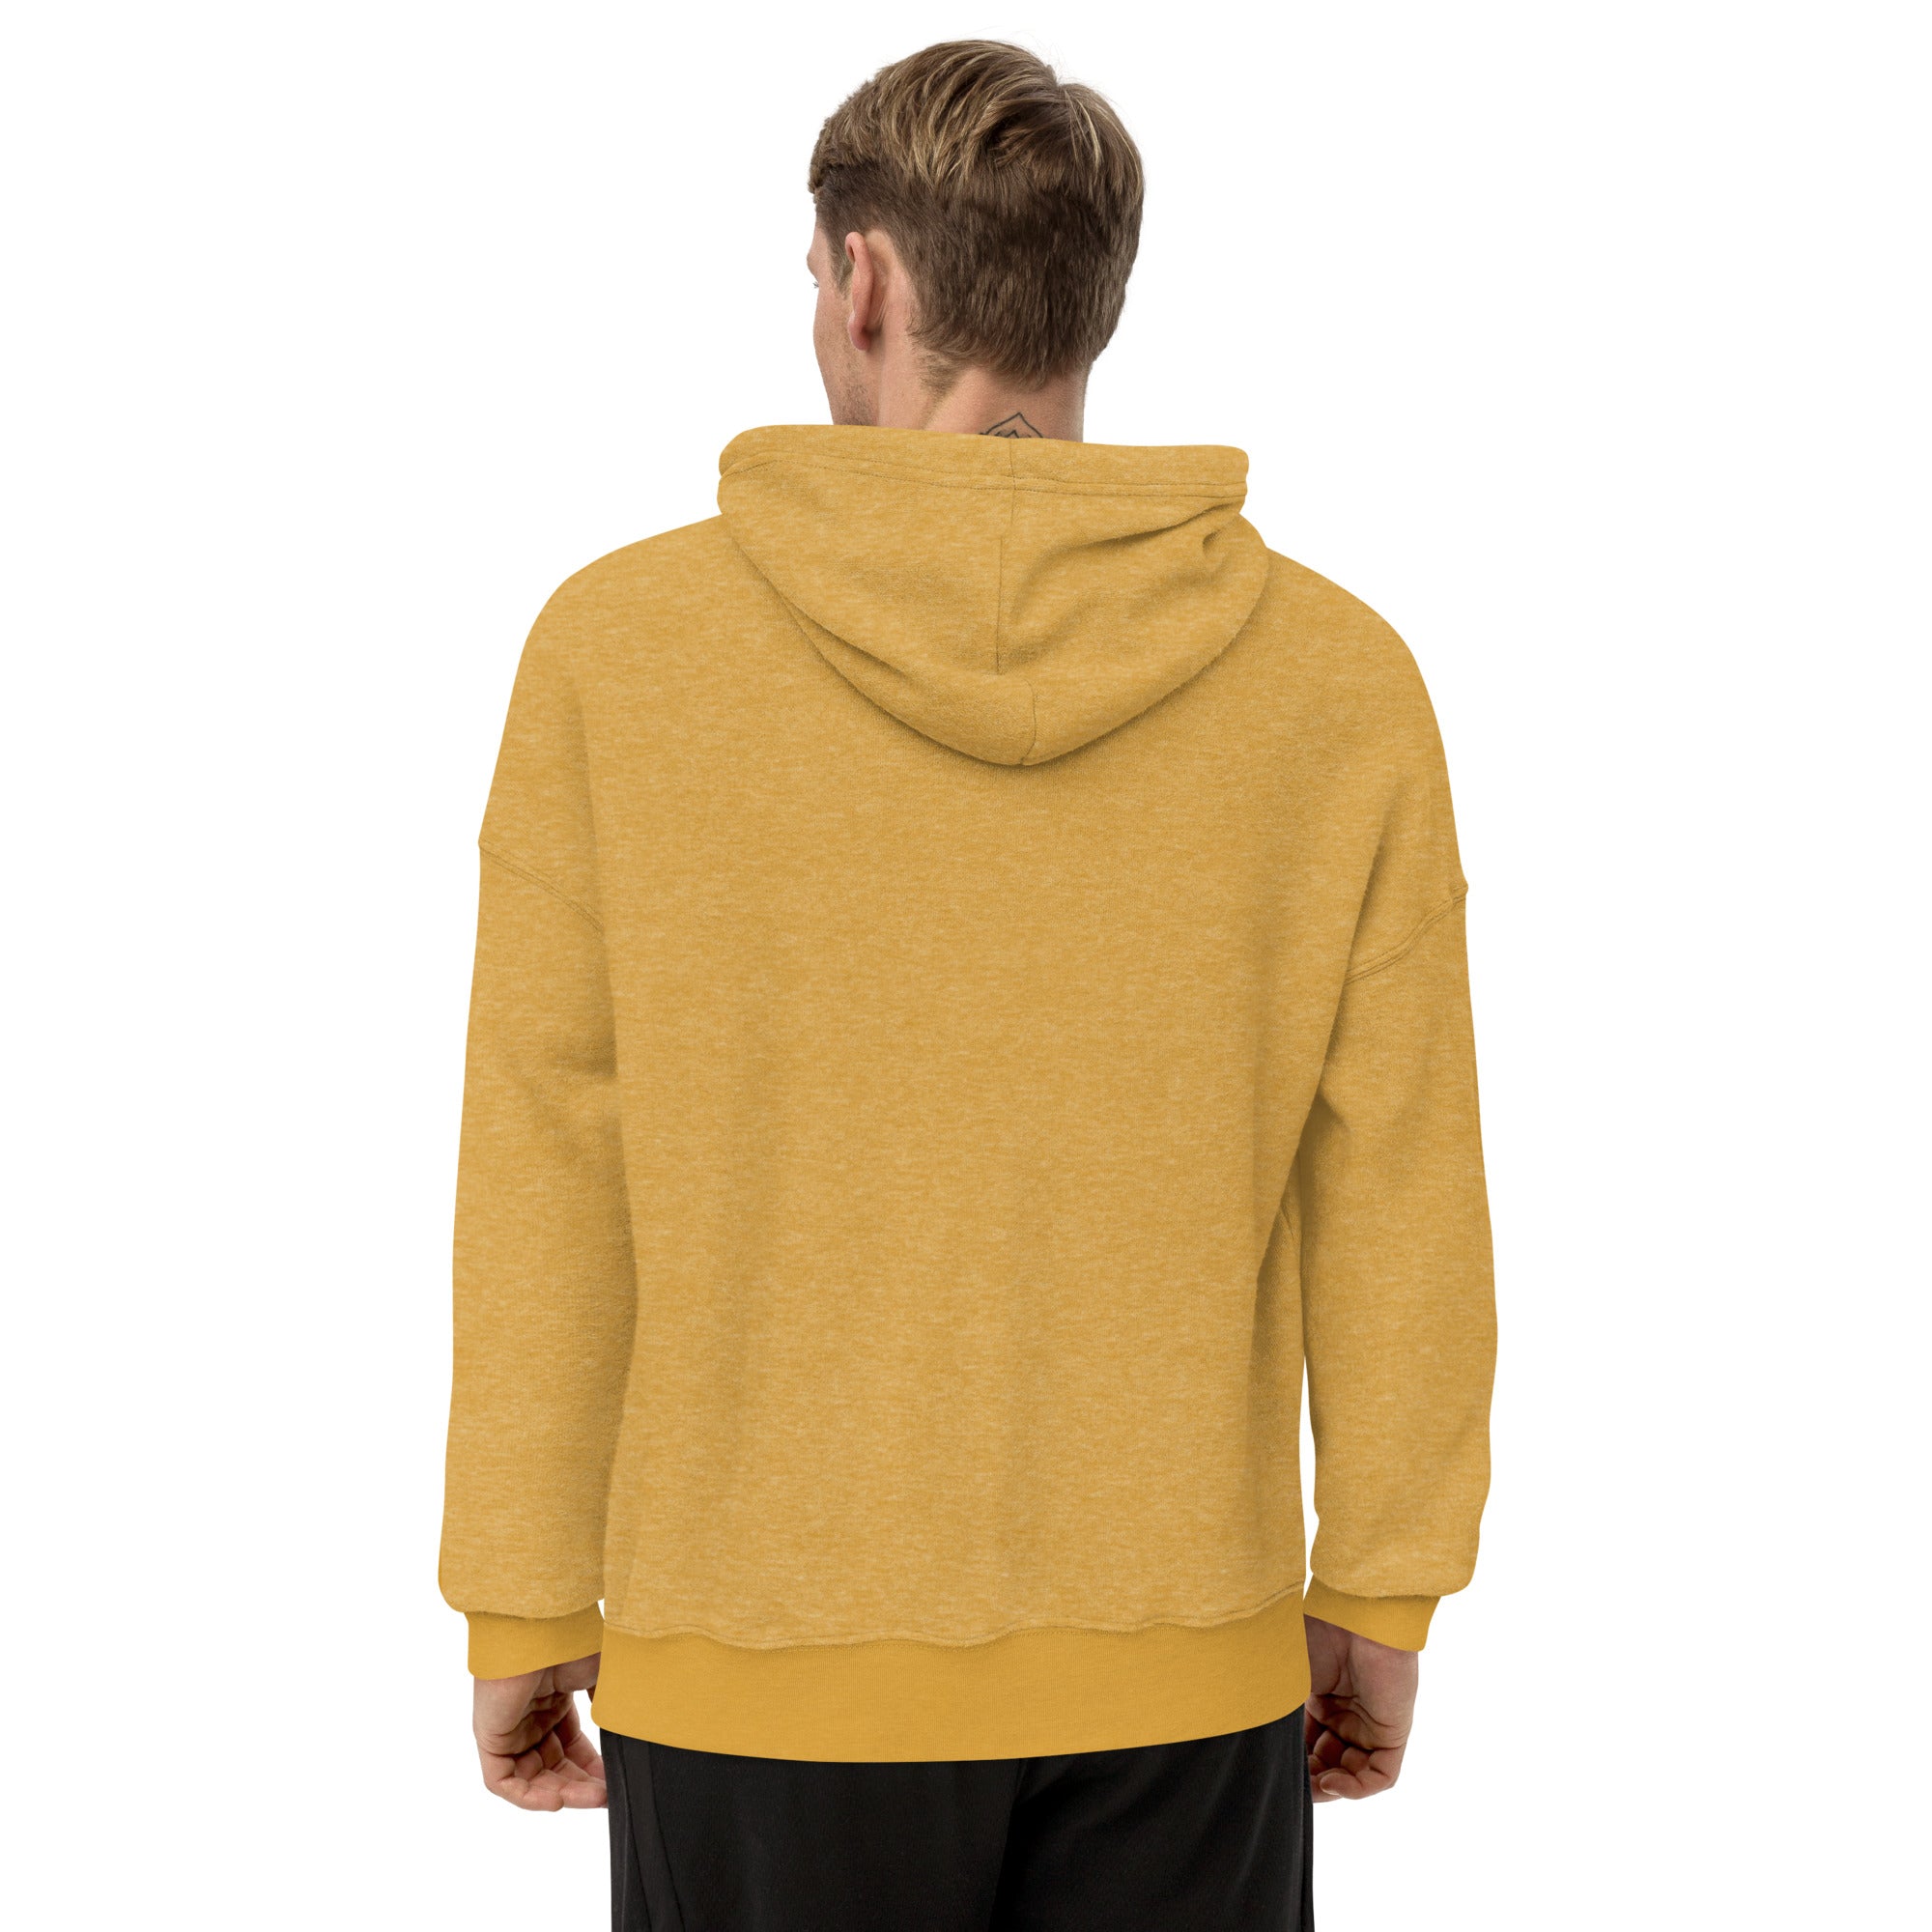 IVF daddy sweater men's sueded fleece hoodie - Young Hugs